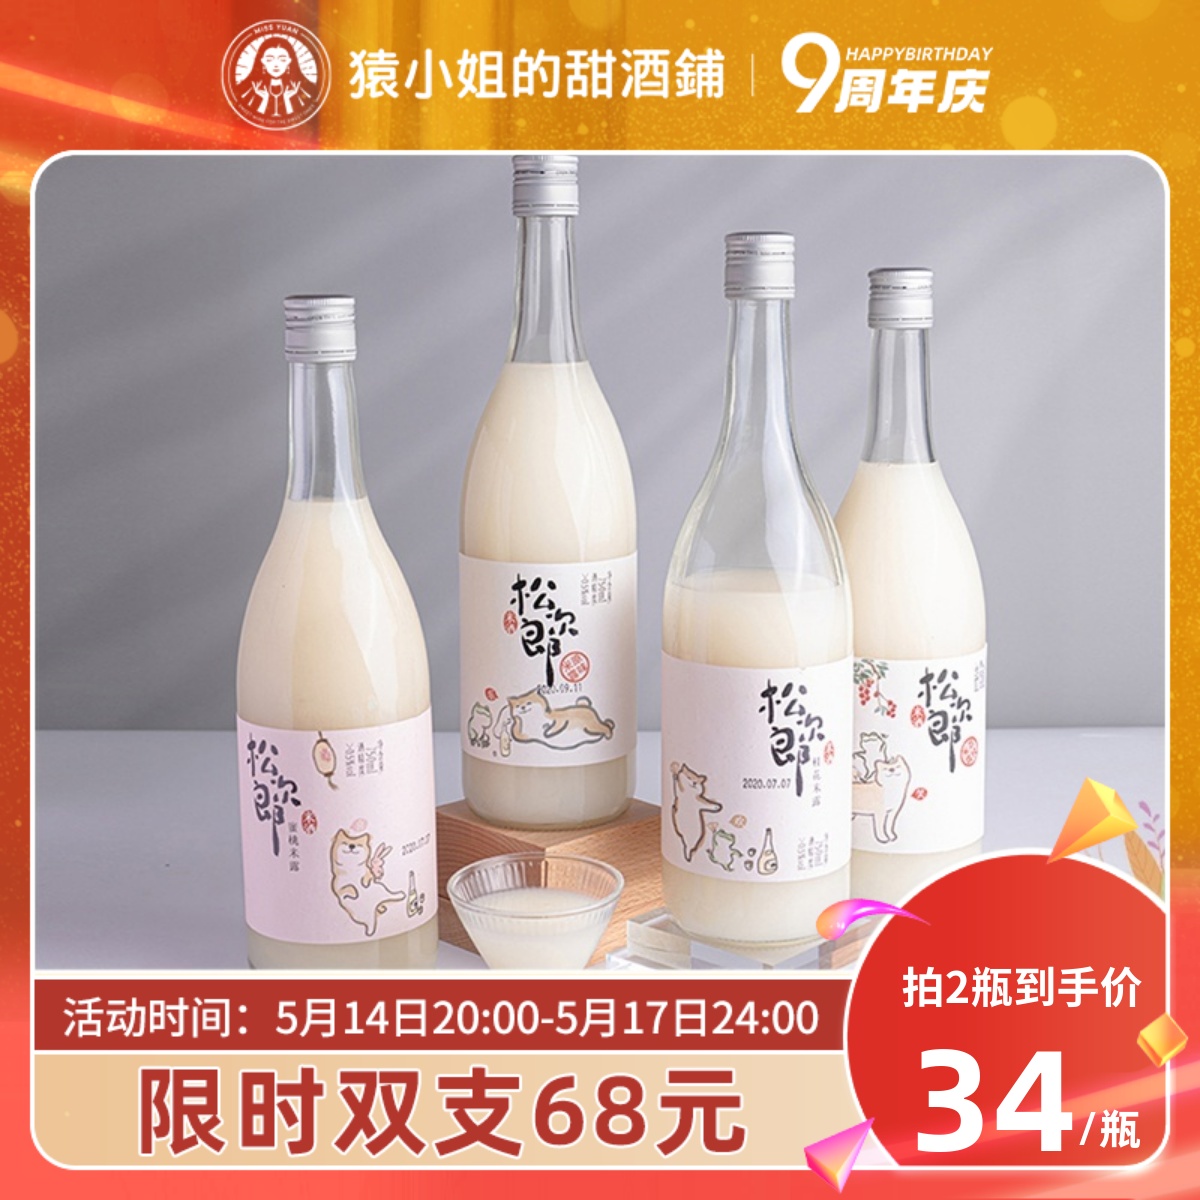 苏州桥 松次郎 蜜桃米露 0.5%vol 750ml 单瓶装